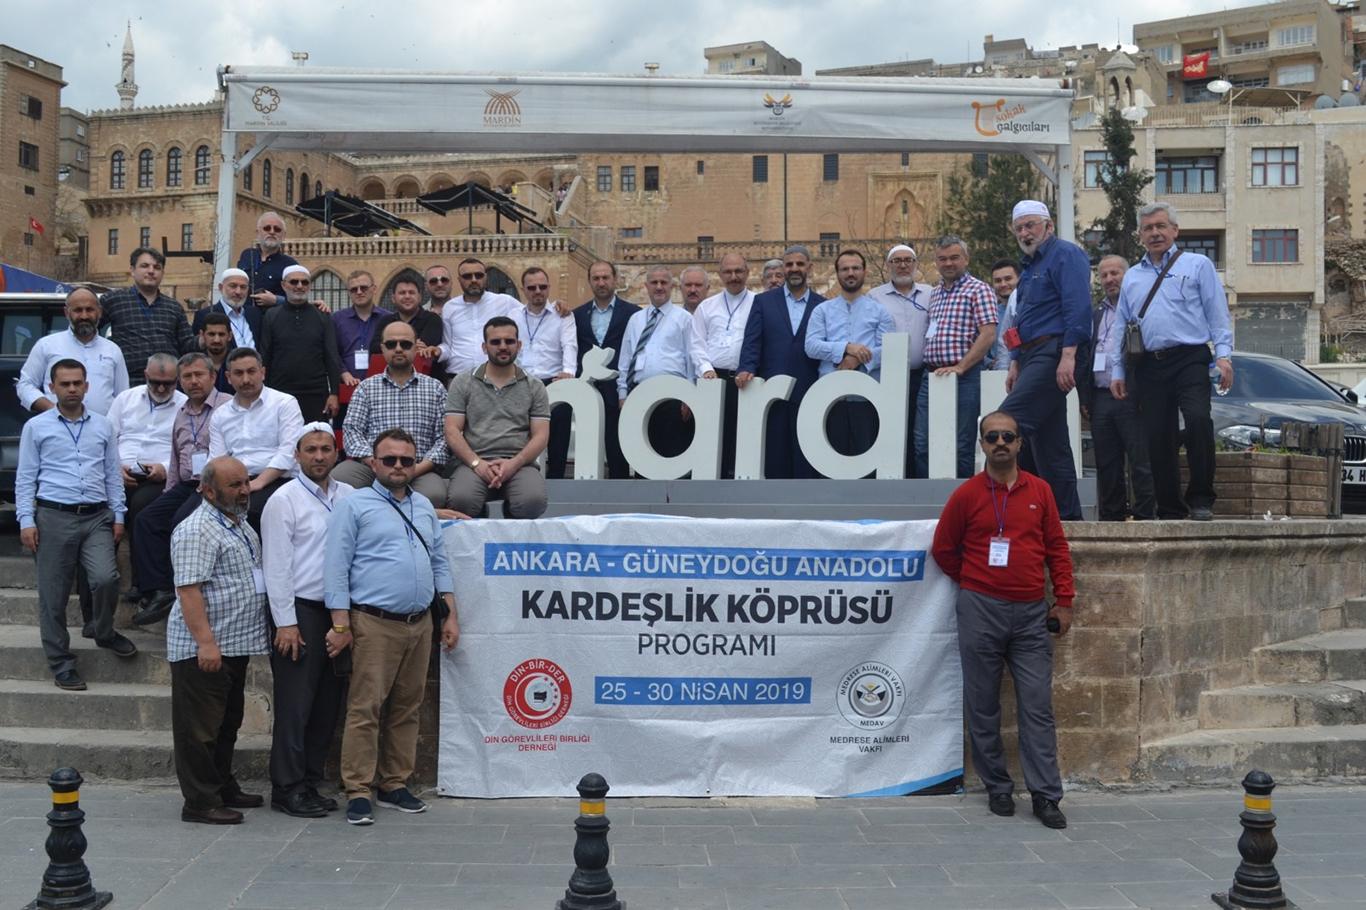 Din görevlileri “Kardeşlik Köprüsü” için Mardin’de